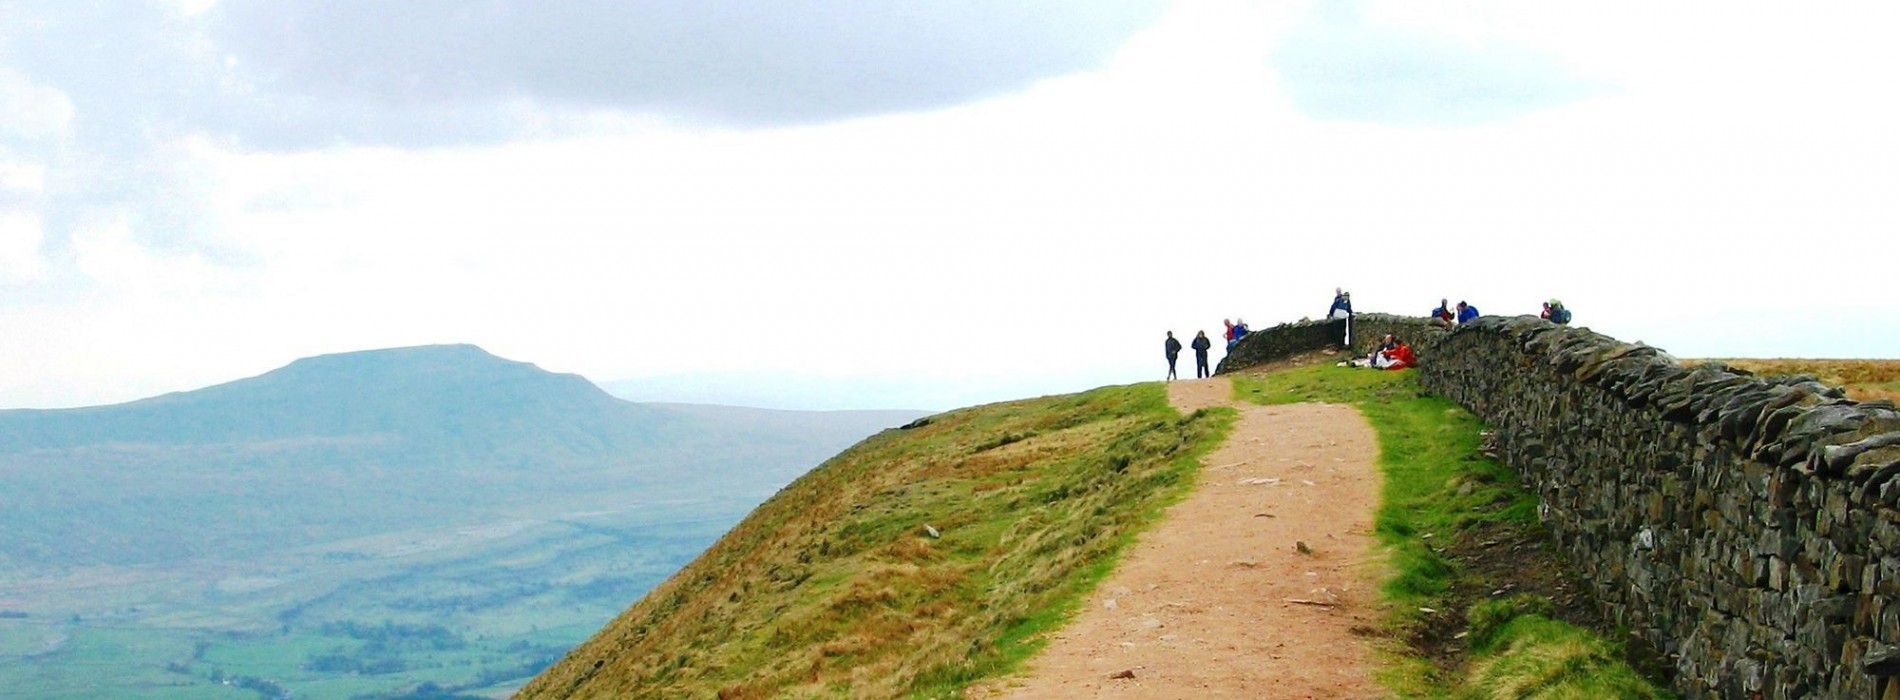 Trekking_top_of_Yorkshire_Peak_path.jpg